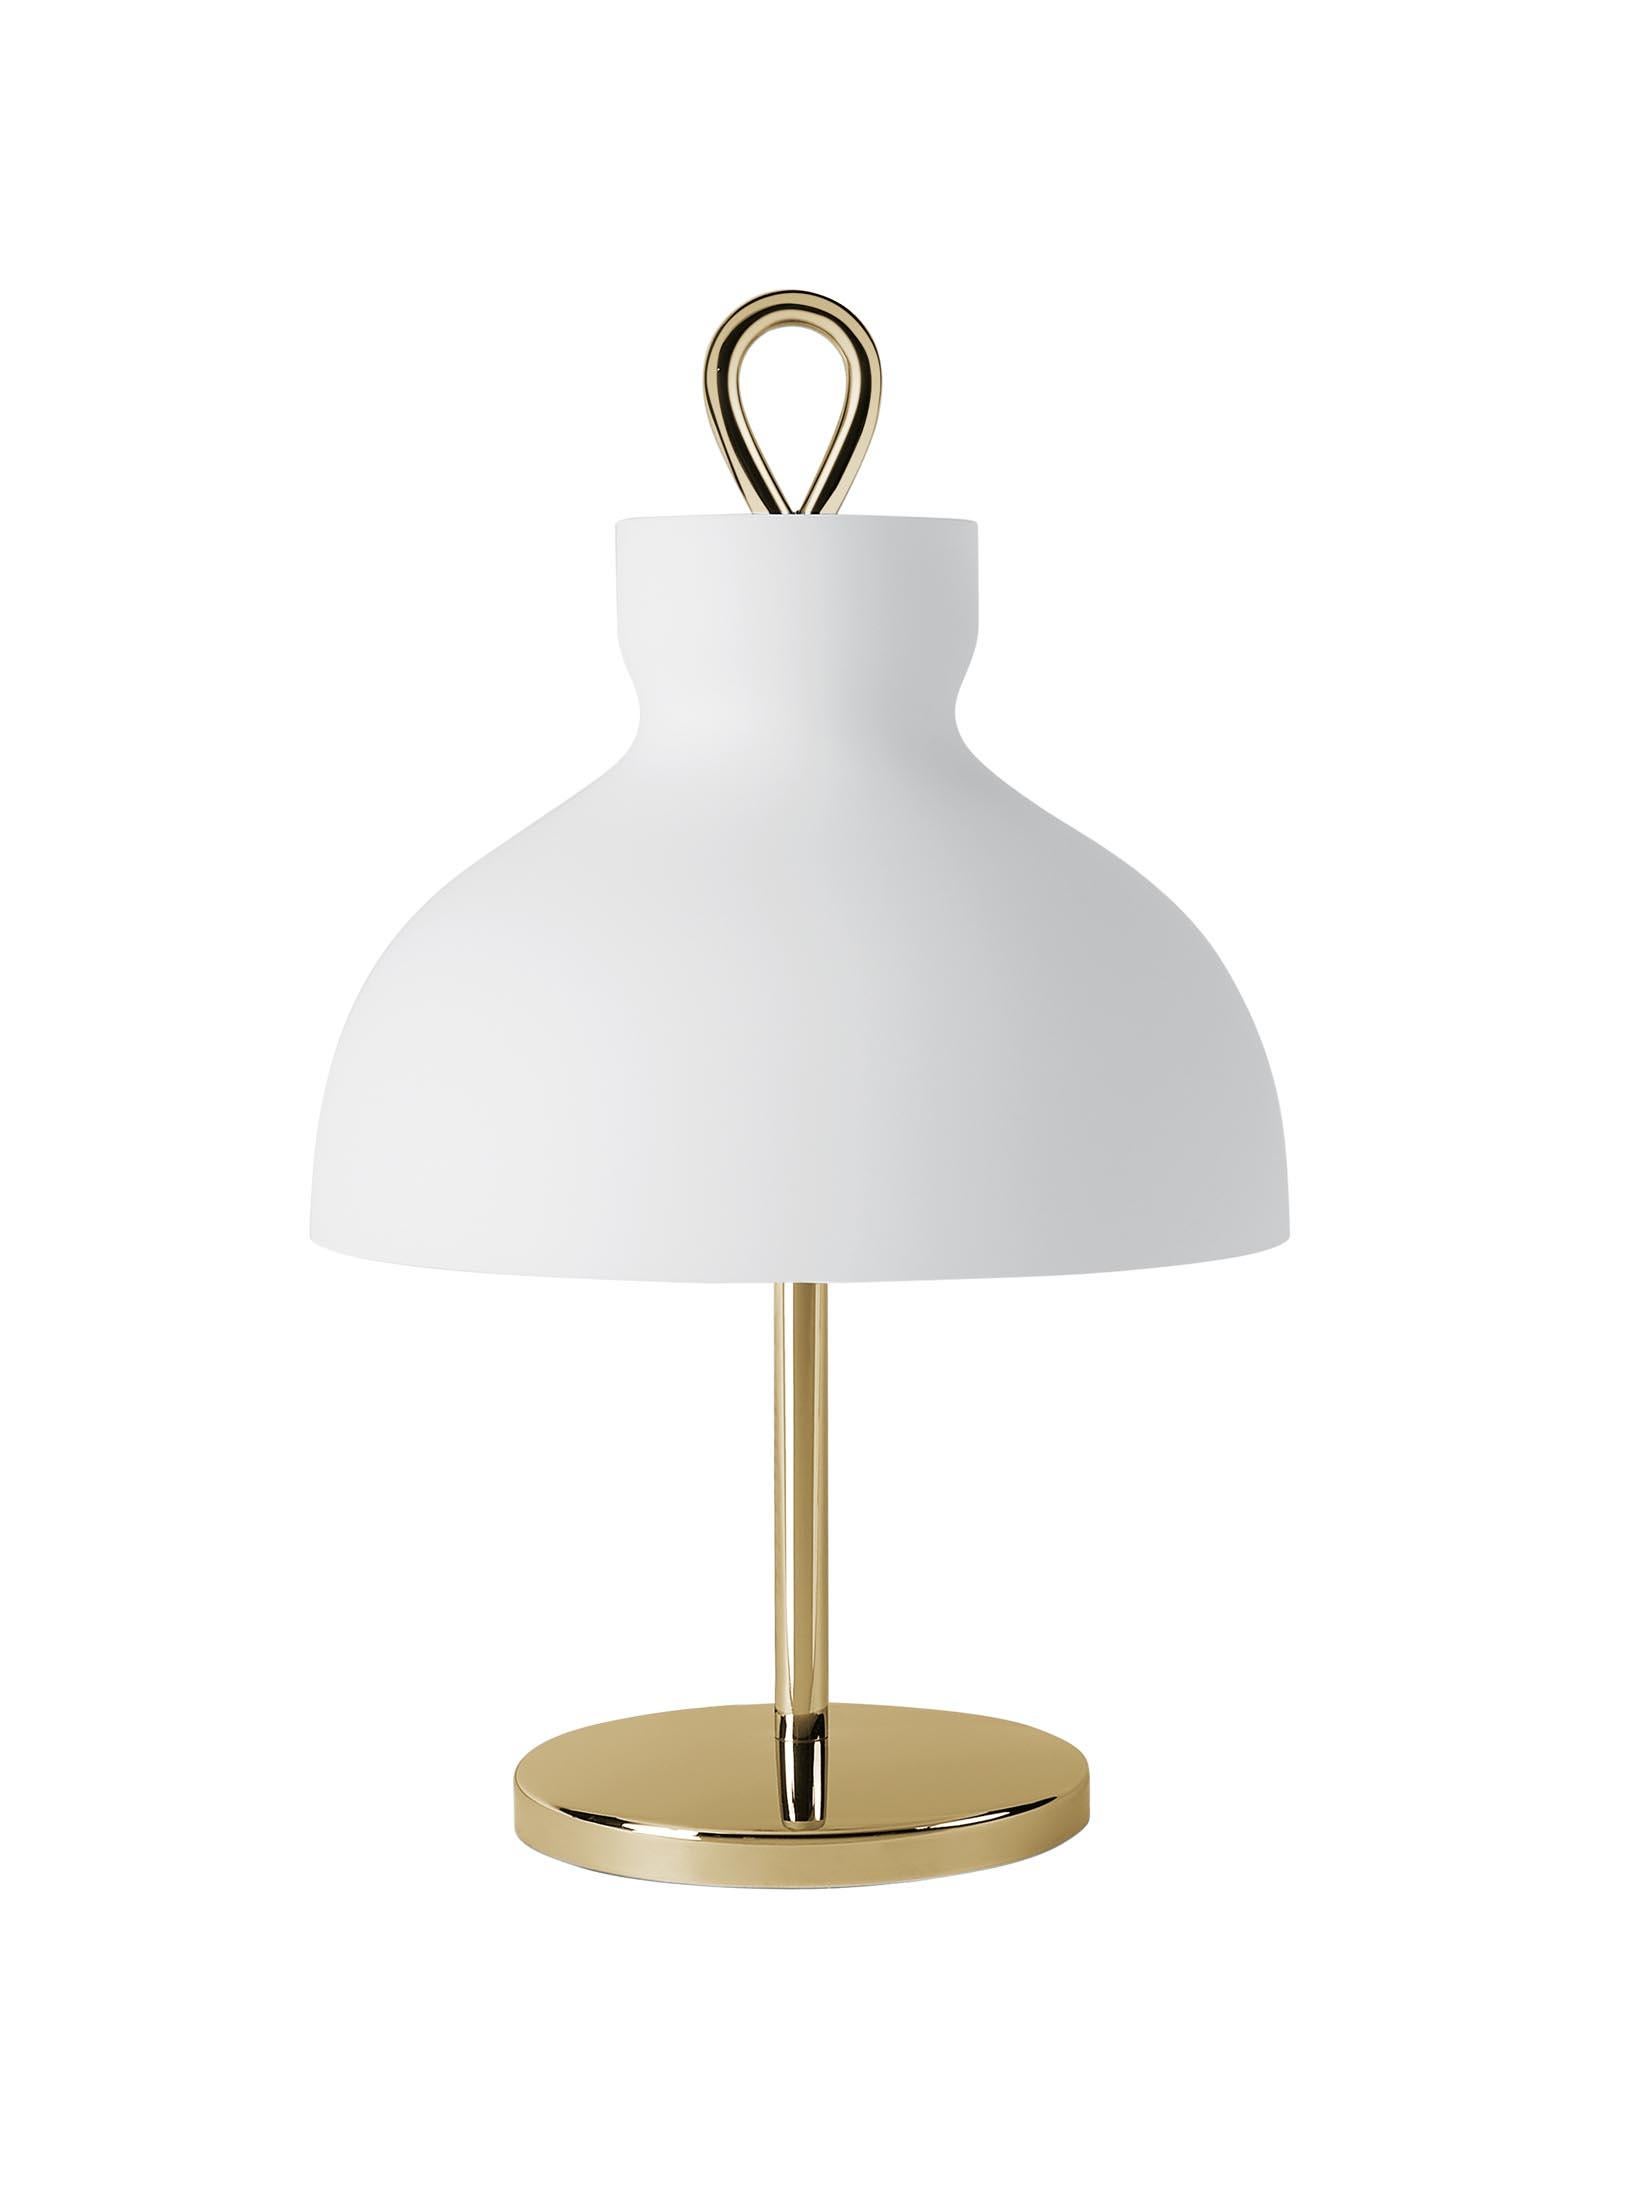 Ignazio Gardella 'Arenzano Bassa' Table Lamp in Glass and Satin Nickel For Sale 3